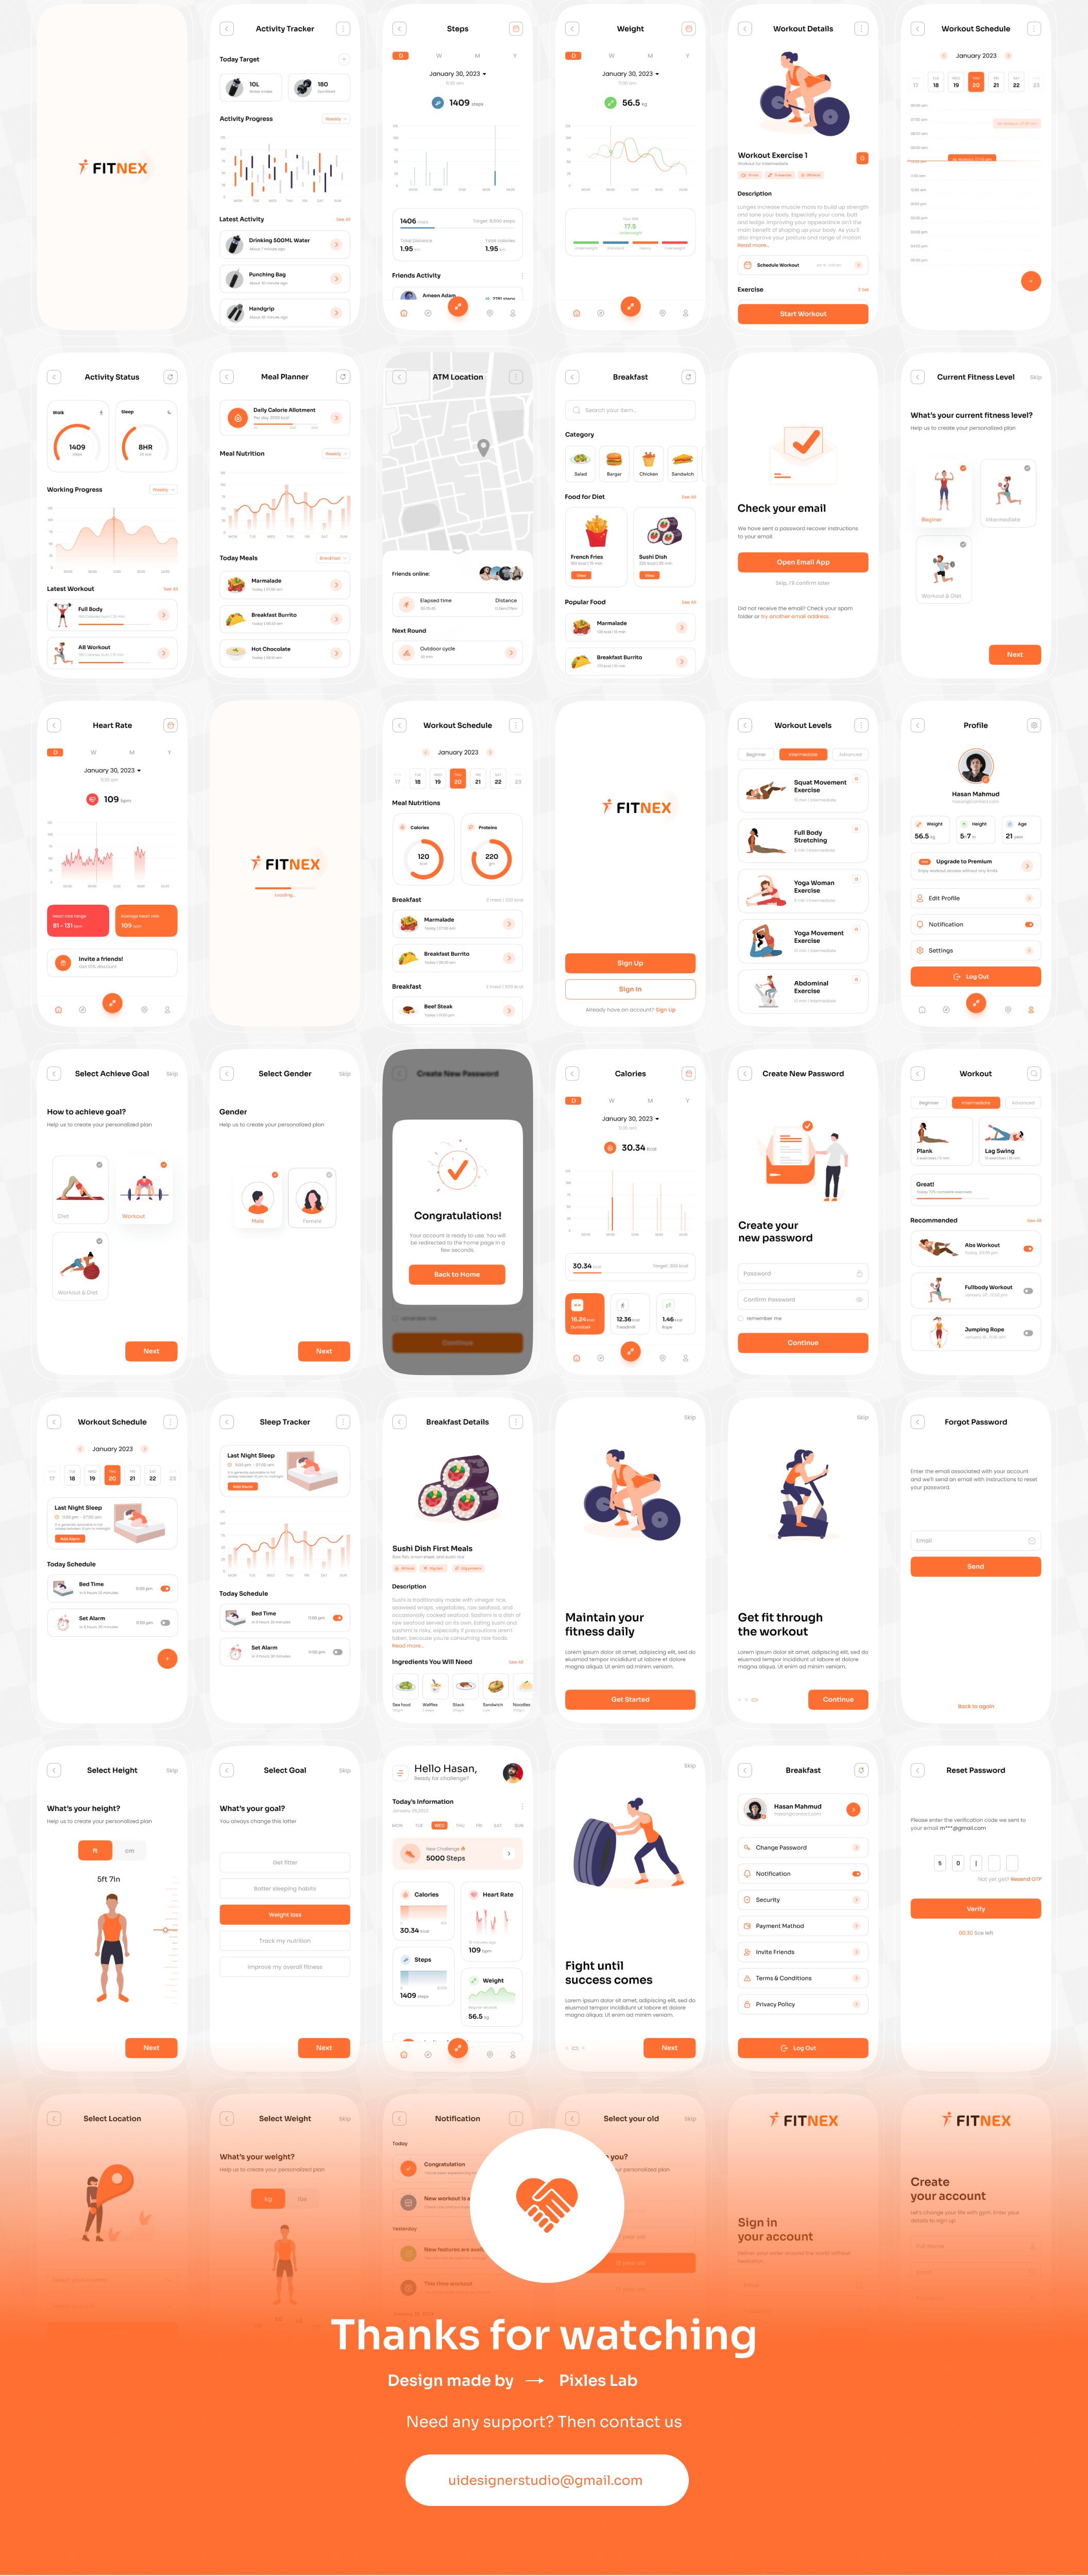 橙色主题健身手机应用UI套件模板素材Fitnex – Fitness Mobile App UI Kit插图10